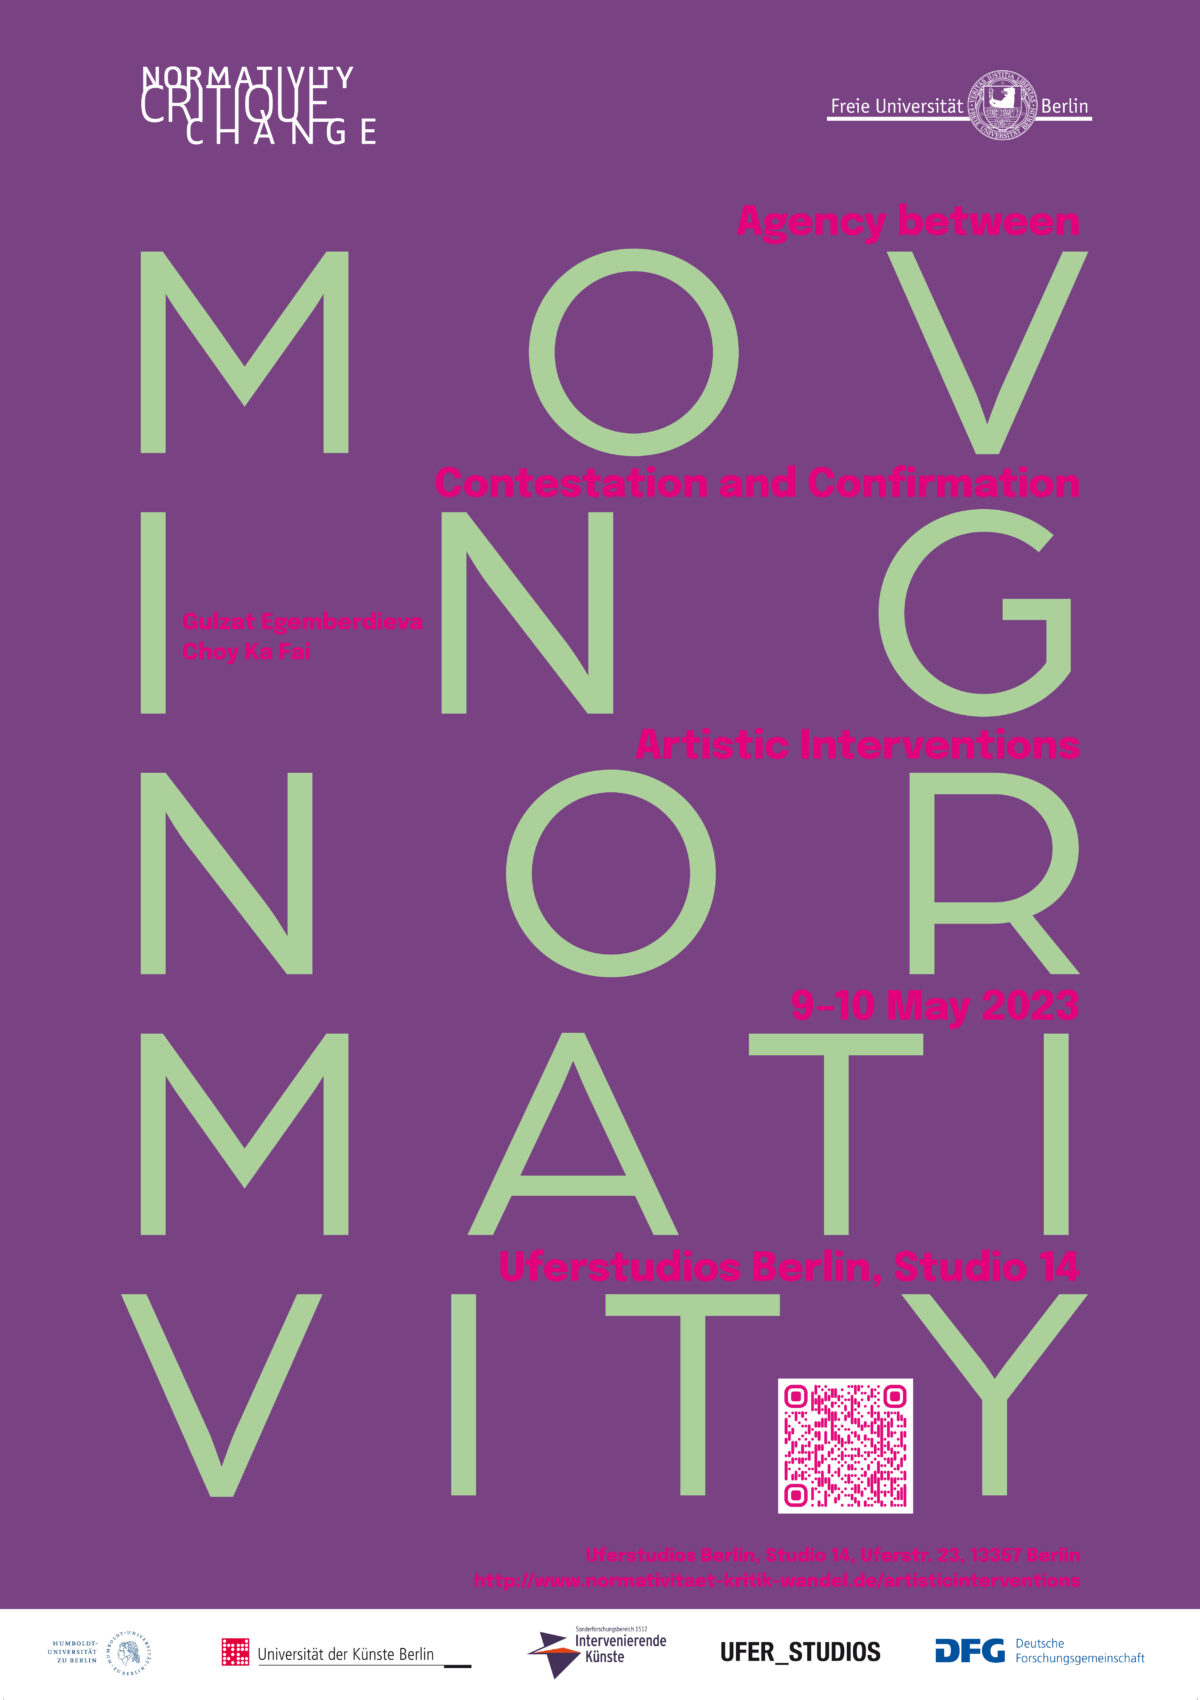 Lilafarbenes Plakat für eine Tagung des Graduiertenkollegs Normativity Critique Change an der Freien Universität Berlin